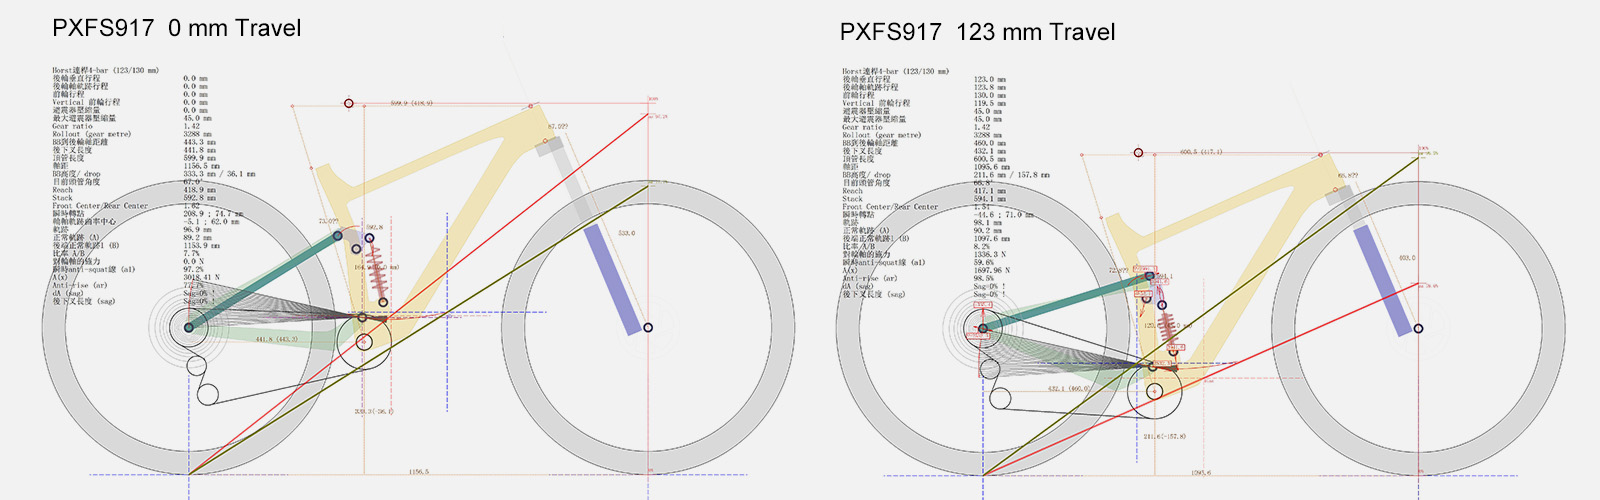 PXFS917 Simulation der Rahmenaufhängung